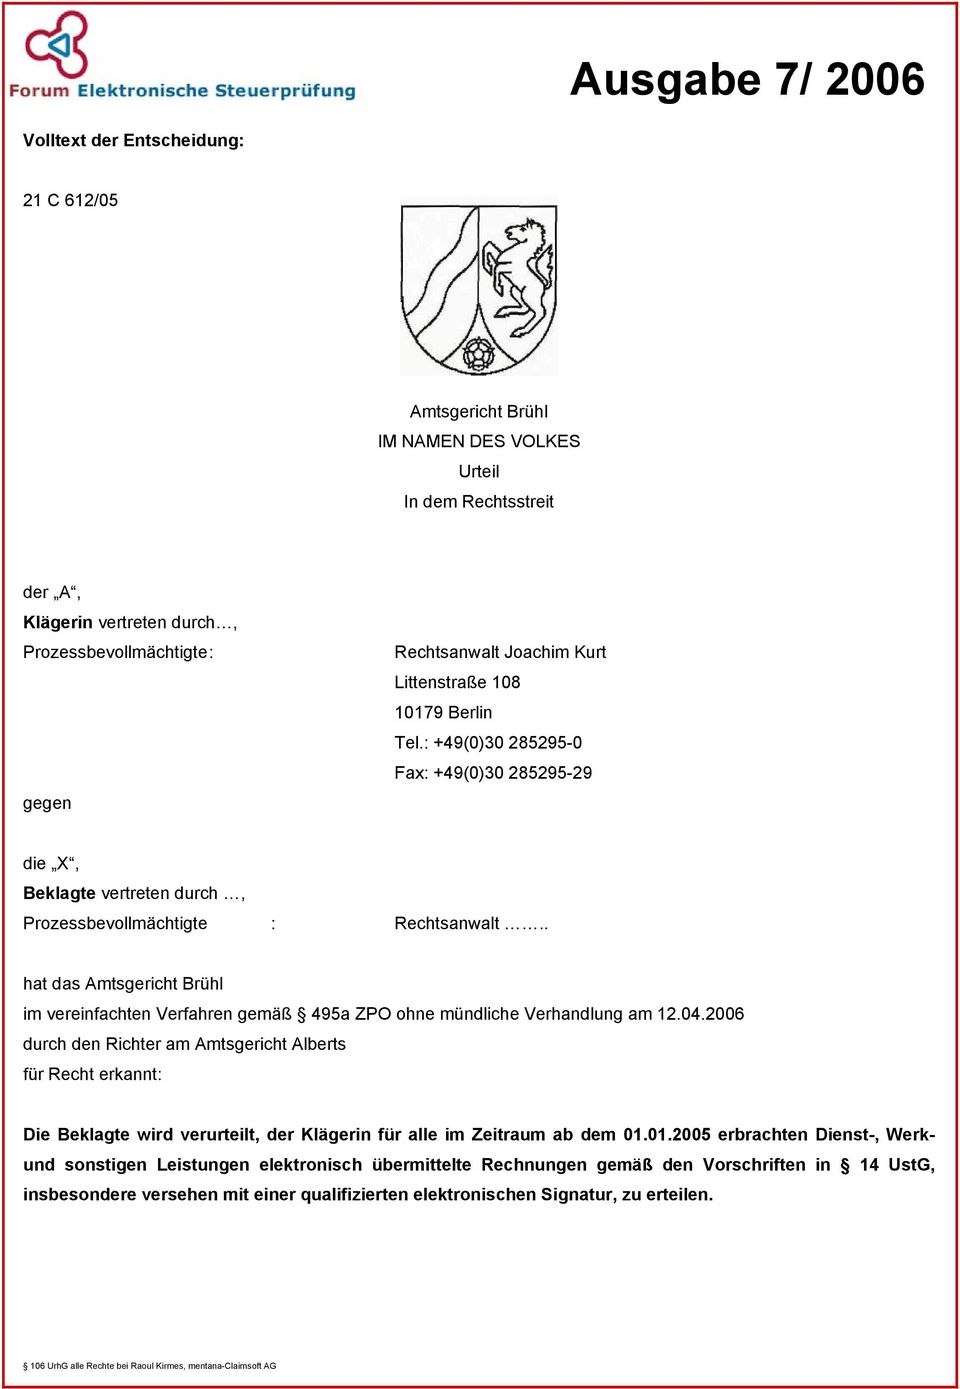 . hat das Amtsgericht Brühl im vereinfachten Verfahren gemäß 495a ZPO ohne mündliche Verhandlung am 12.04.